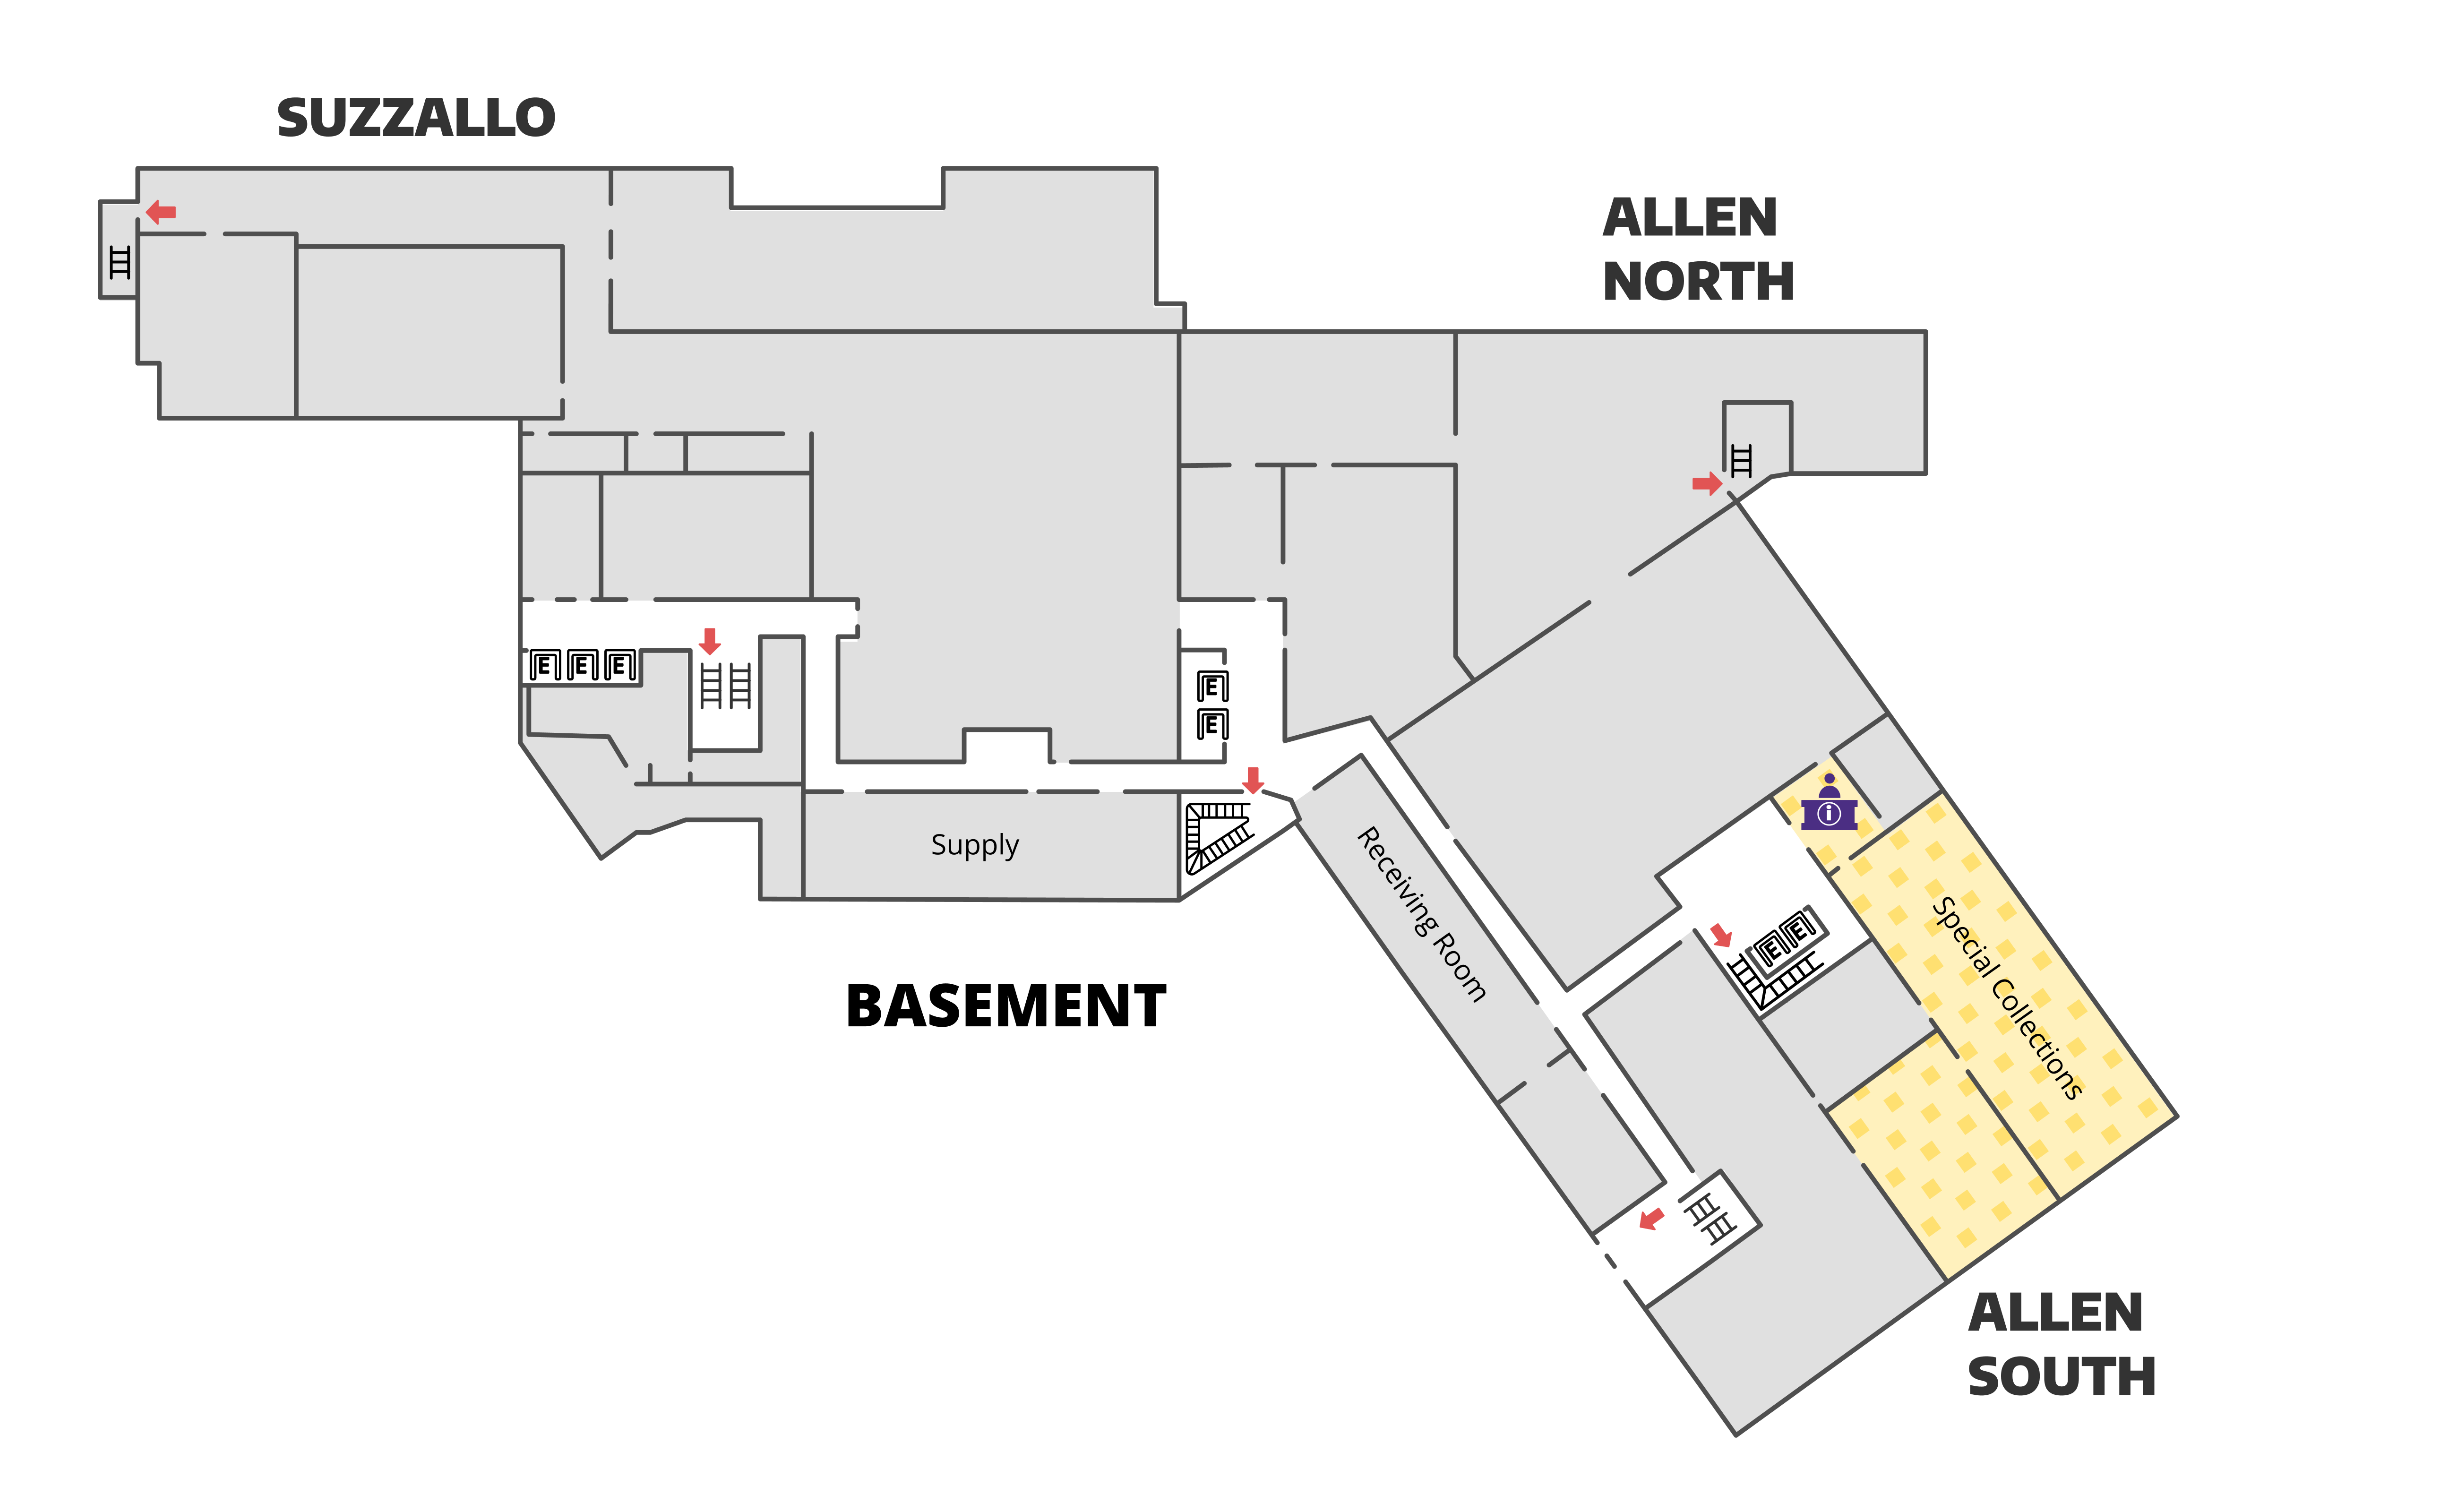 Suzzallo Allen basement noise levels map